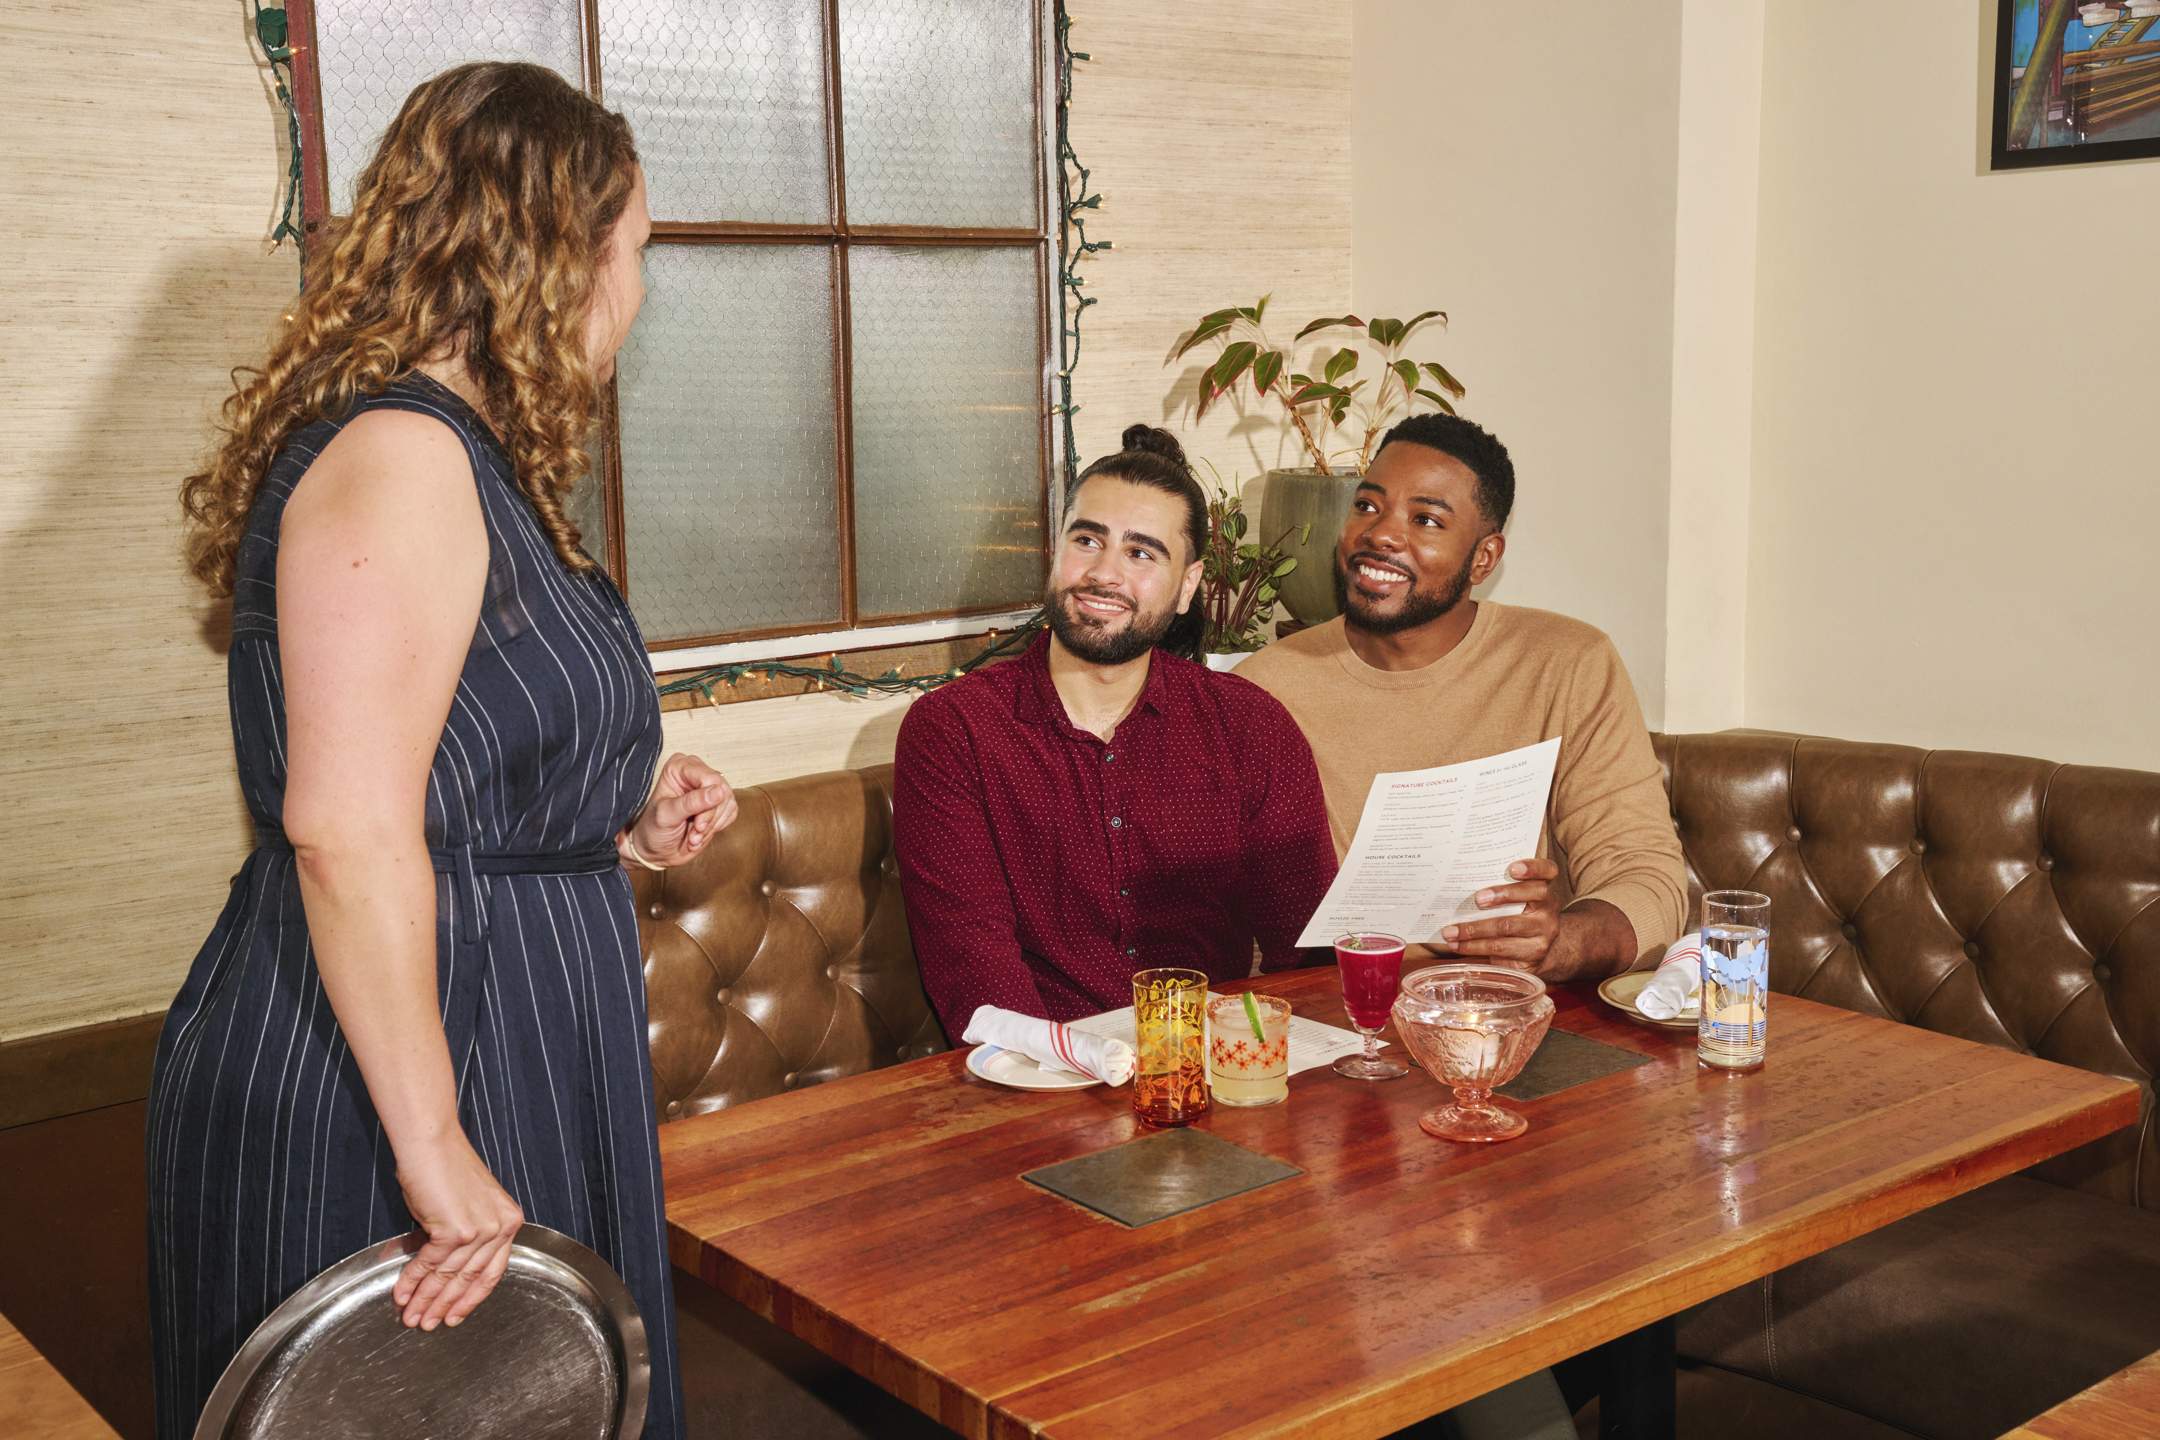 la imagen muestra un entorno de restaurante. Dos comensales están consultando un menú mientras una mesera está de pie junto a la mesa.